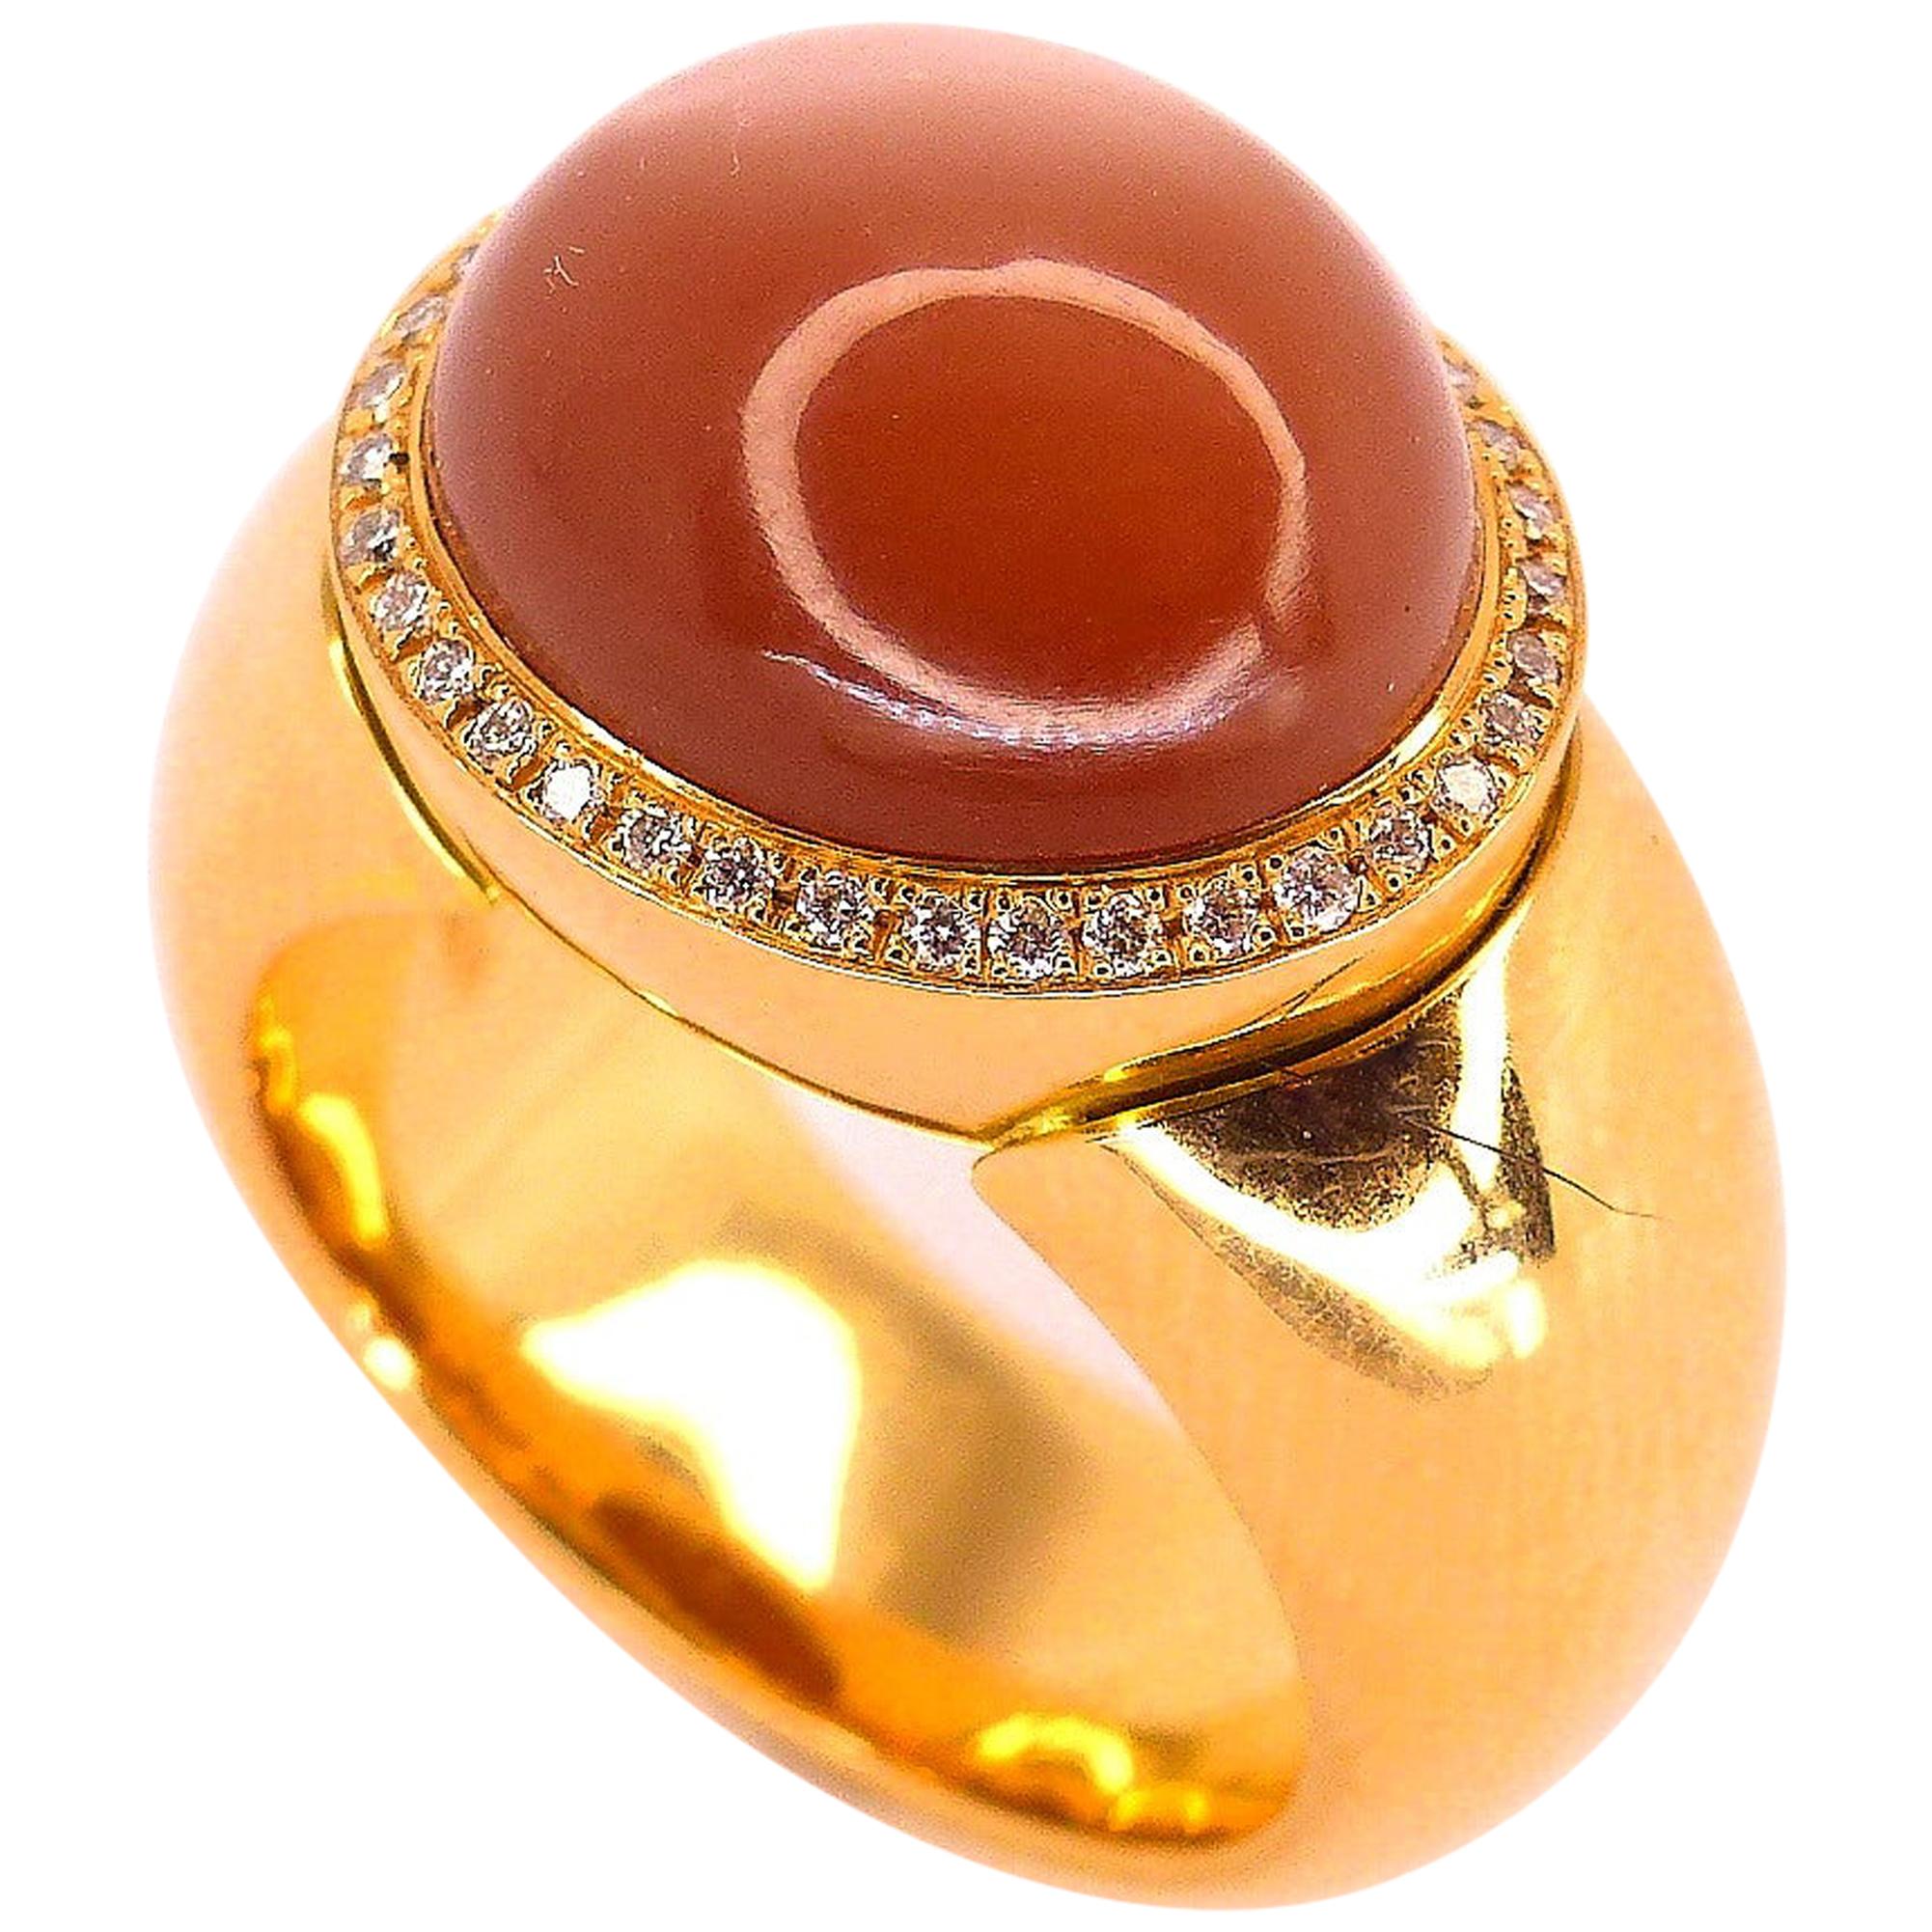  Ring aus Roségold mit 1 braunem Mondstein, oval 14x12mm und 42 Diamanten.